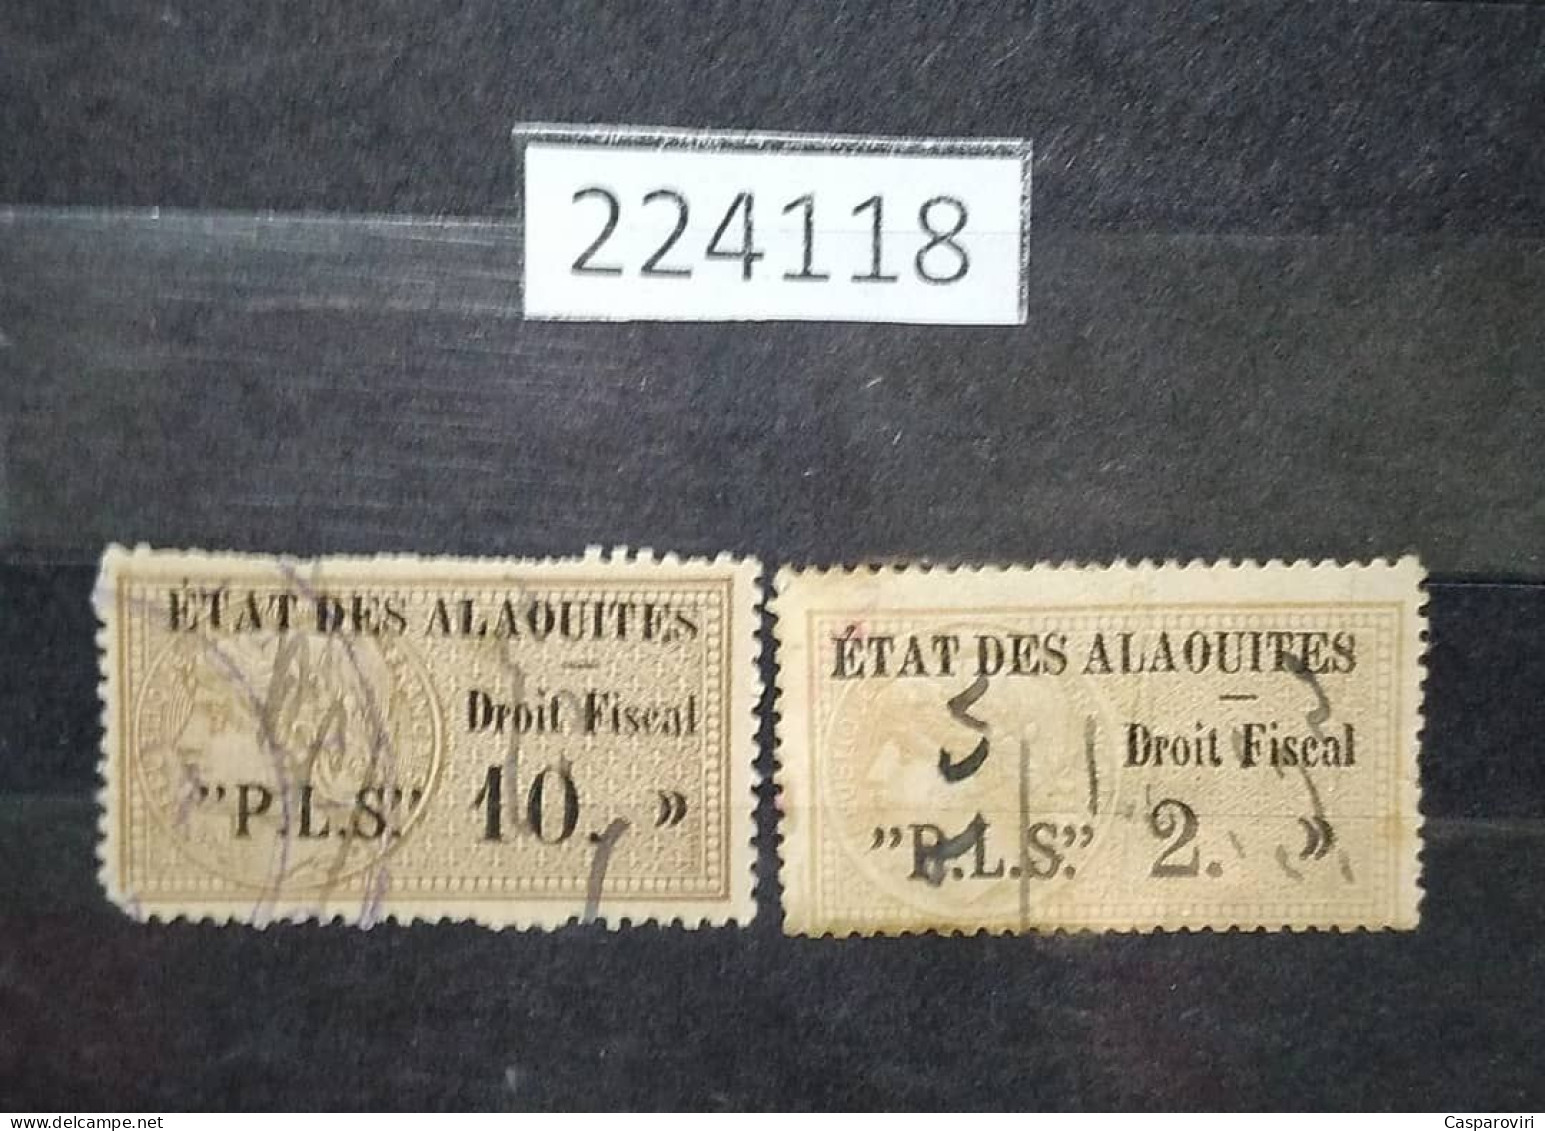 224118; French Colonies; Etat Des Alaouites; 2 Revenue French Stamps 2, 10 P ;Black Overprint Droit Fiscal; USED - Oblitérés